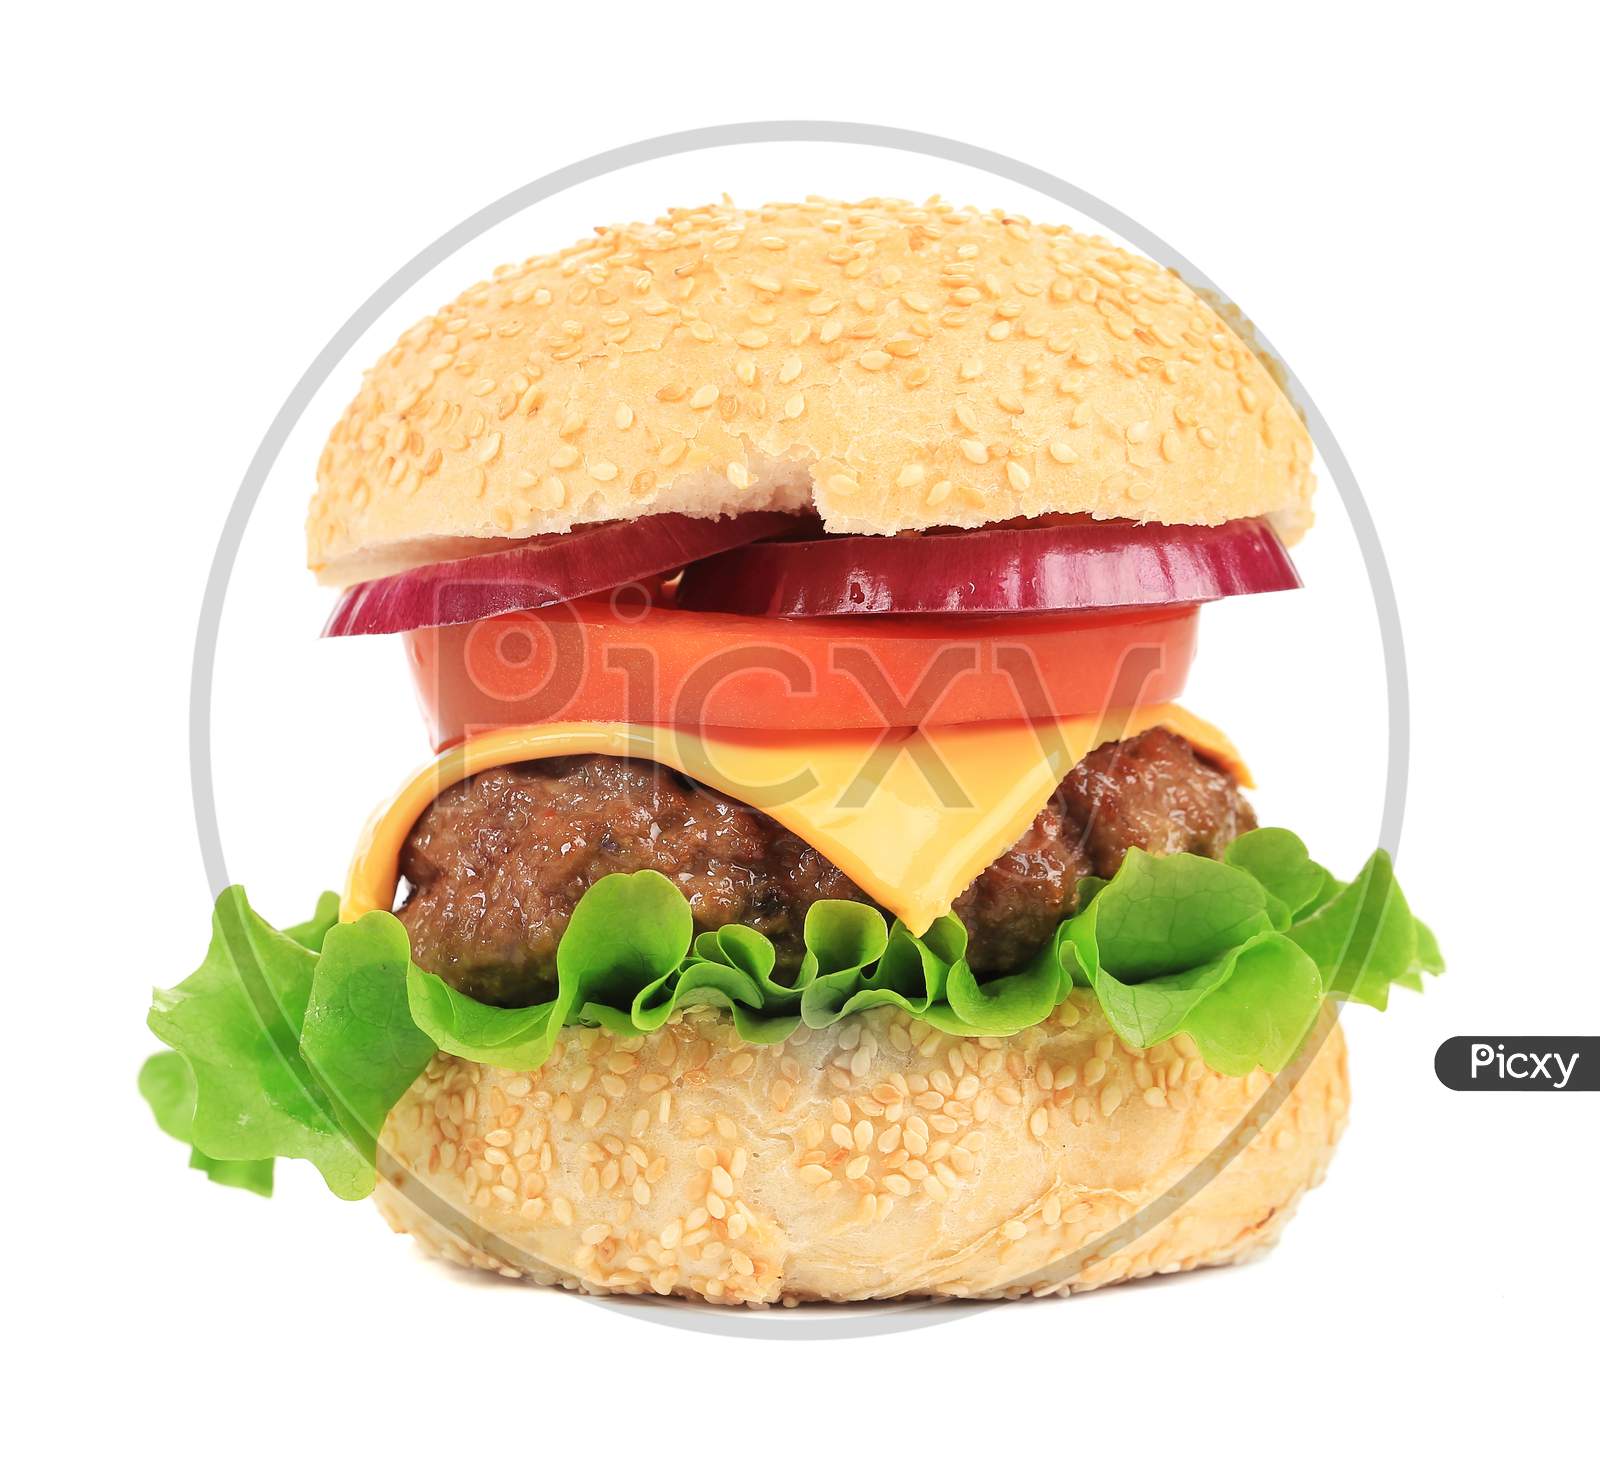 Close Up Of Fresh Hamburger. Isolated On A White Background.